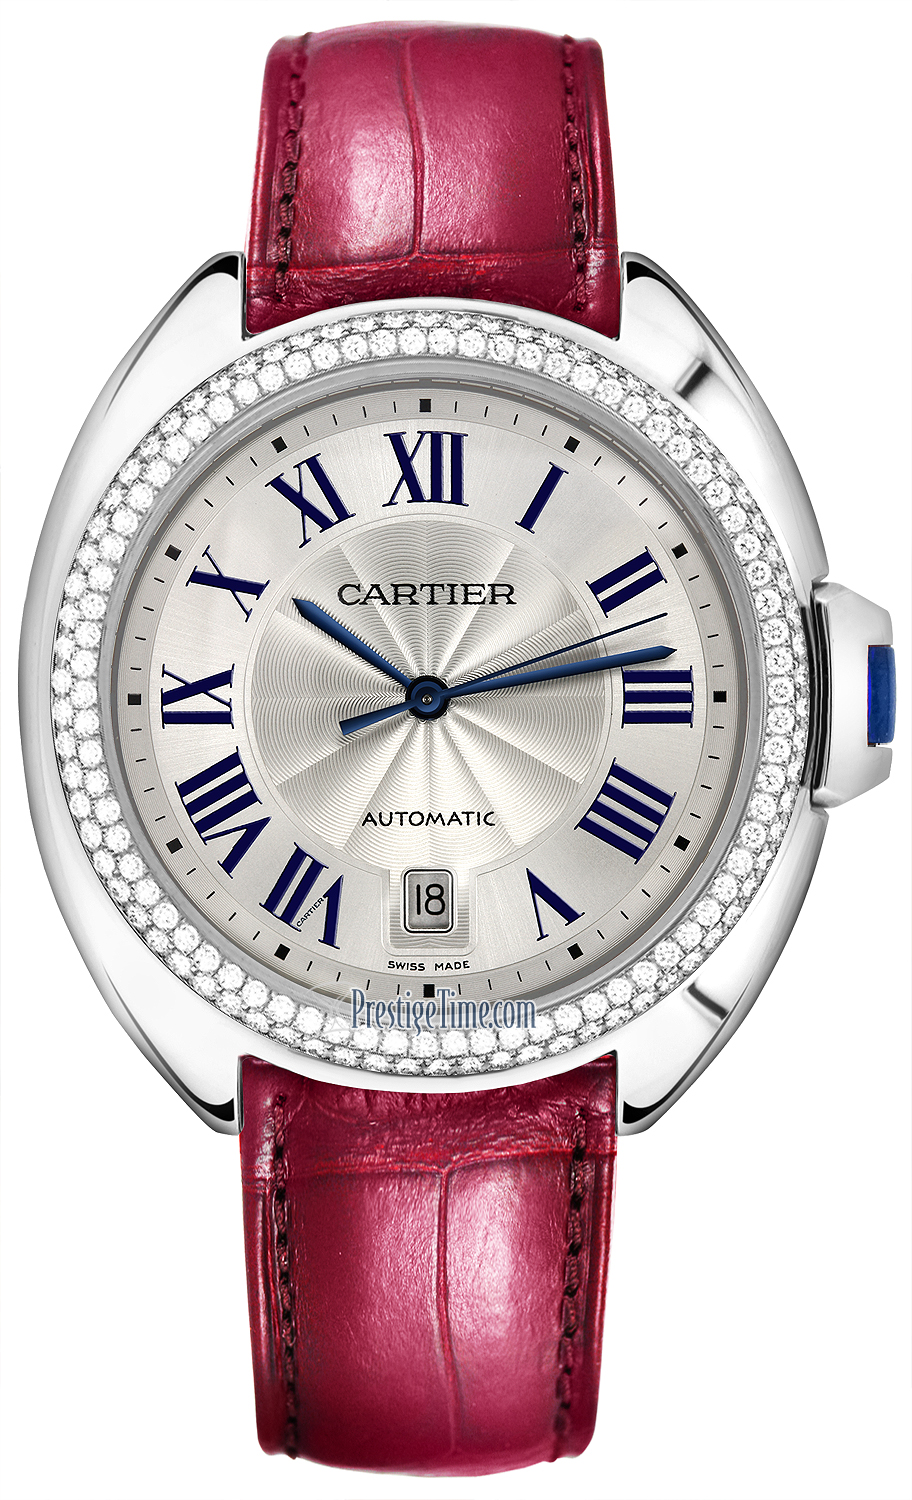 WJCL0011 Cartier Cle De Cartier Automatic 40mm Midsize Watch